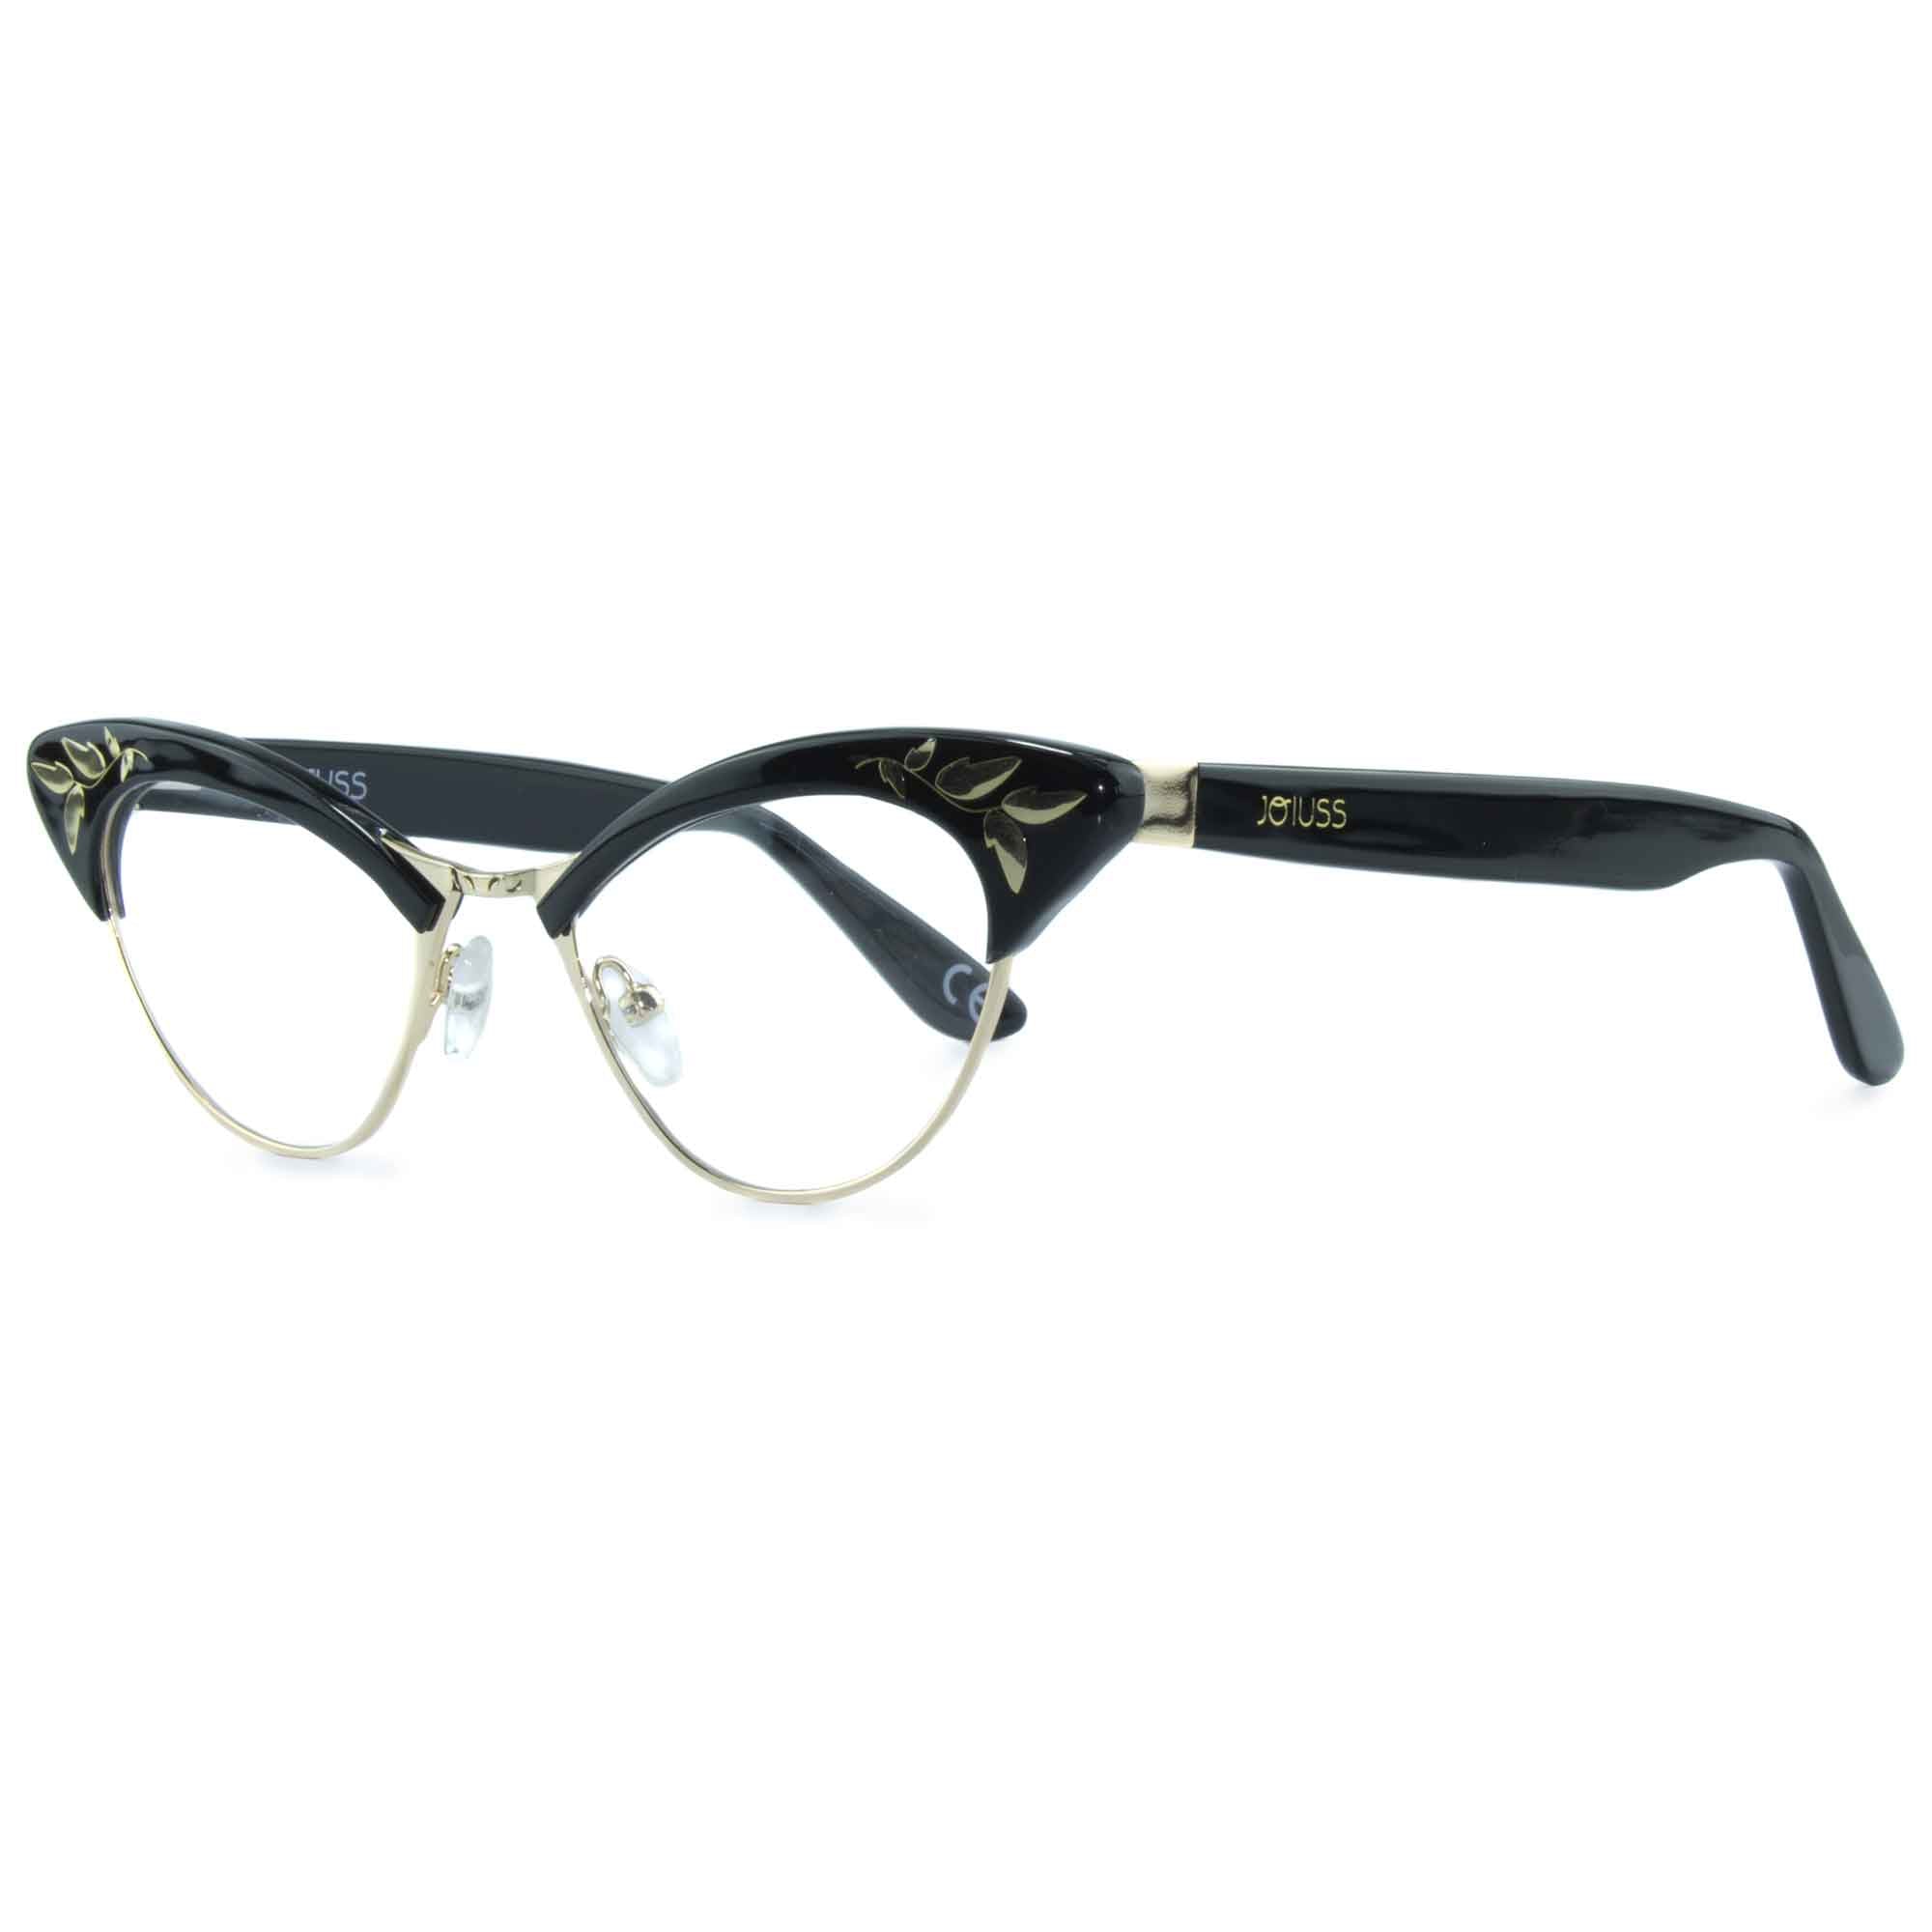 Cat Eye Glasses Frames - Rita Black & Gold